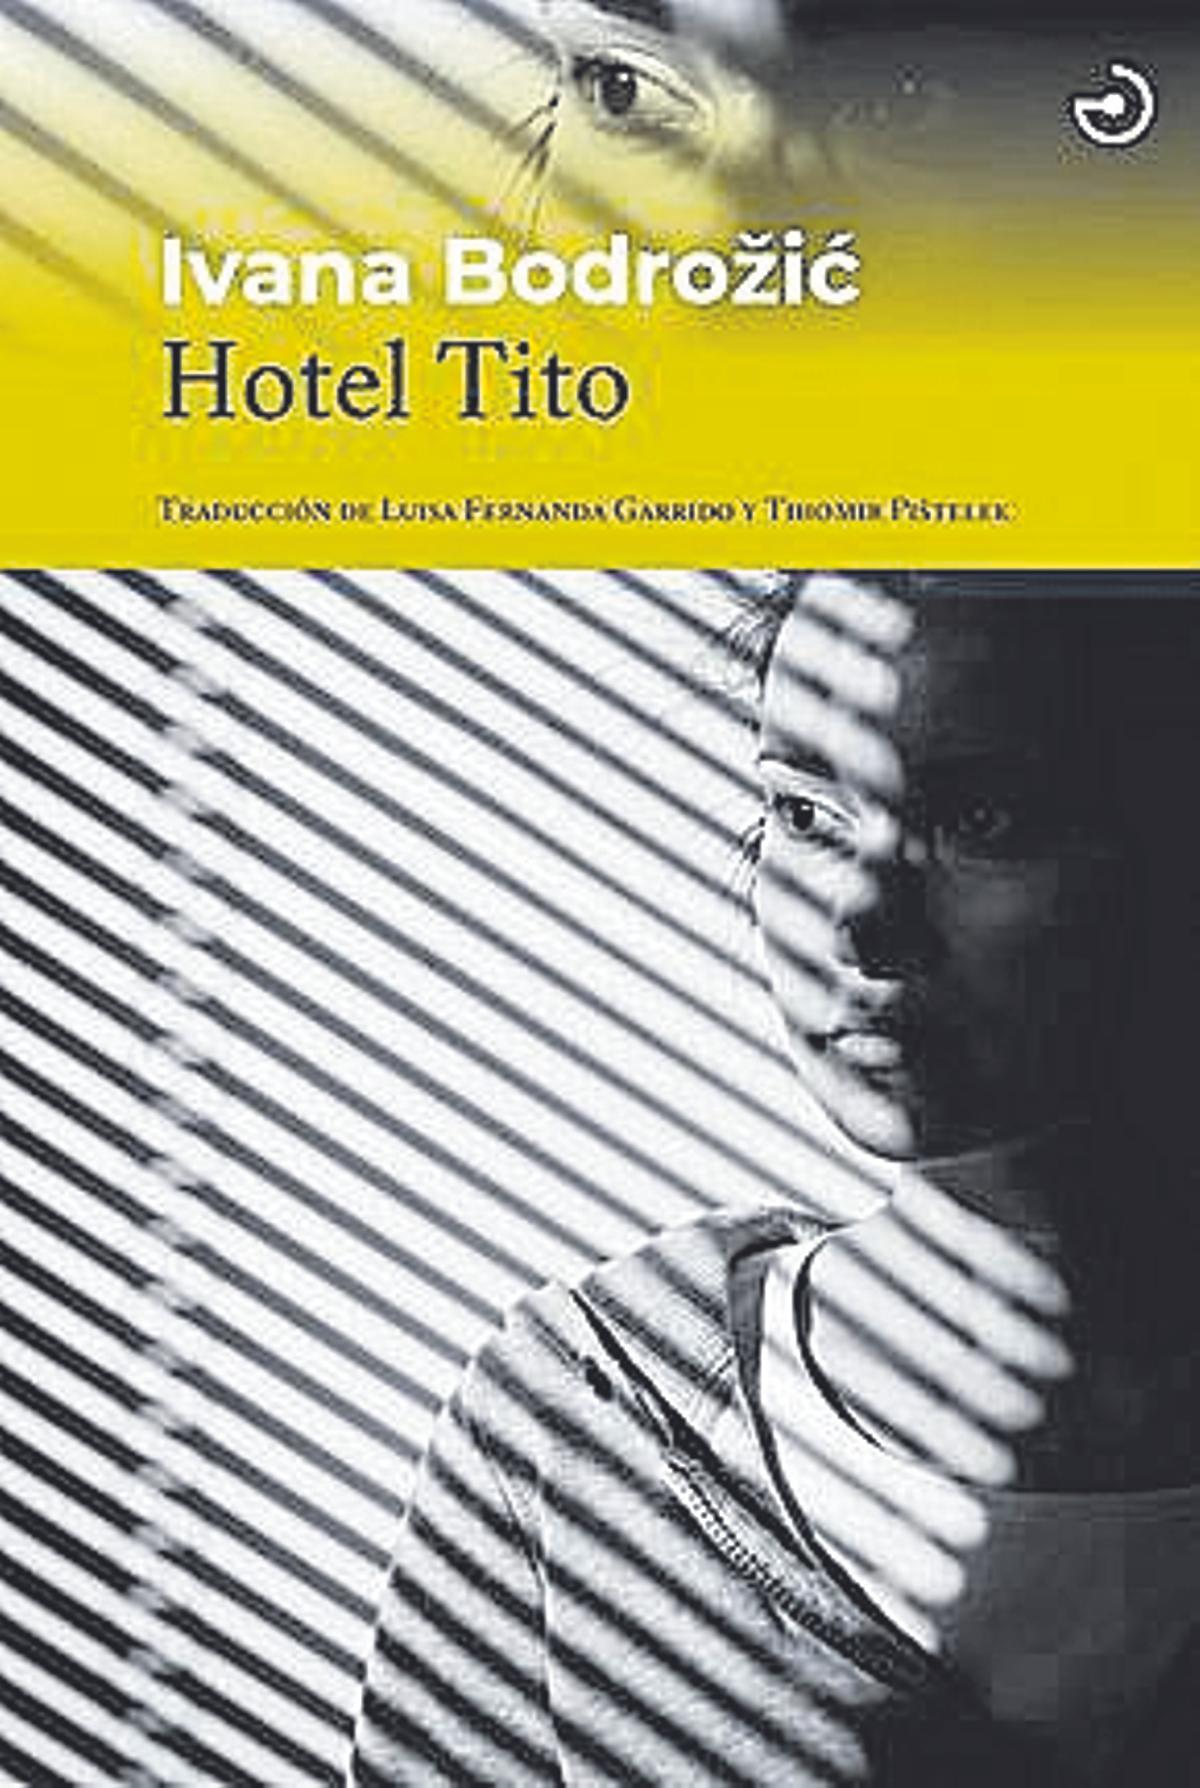 Ivana Bodrožic  Hotel Tito   Traducción de Luisa Fernanda Garrido y Tihomir Pištelek  Menoscuarto  208 páginas / 17,90 euros